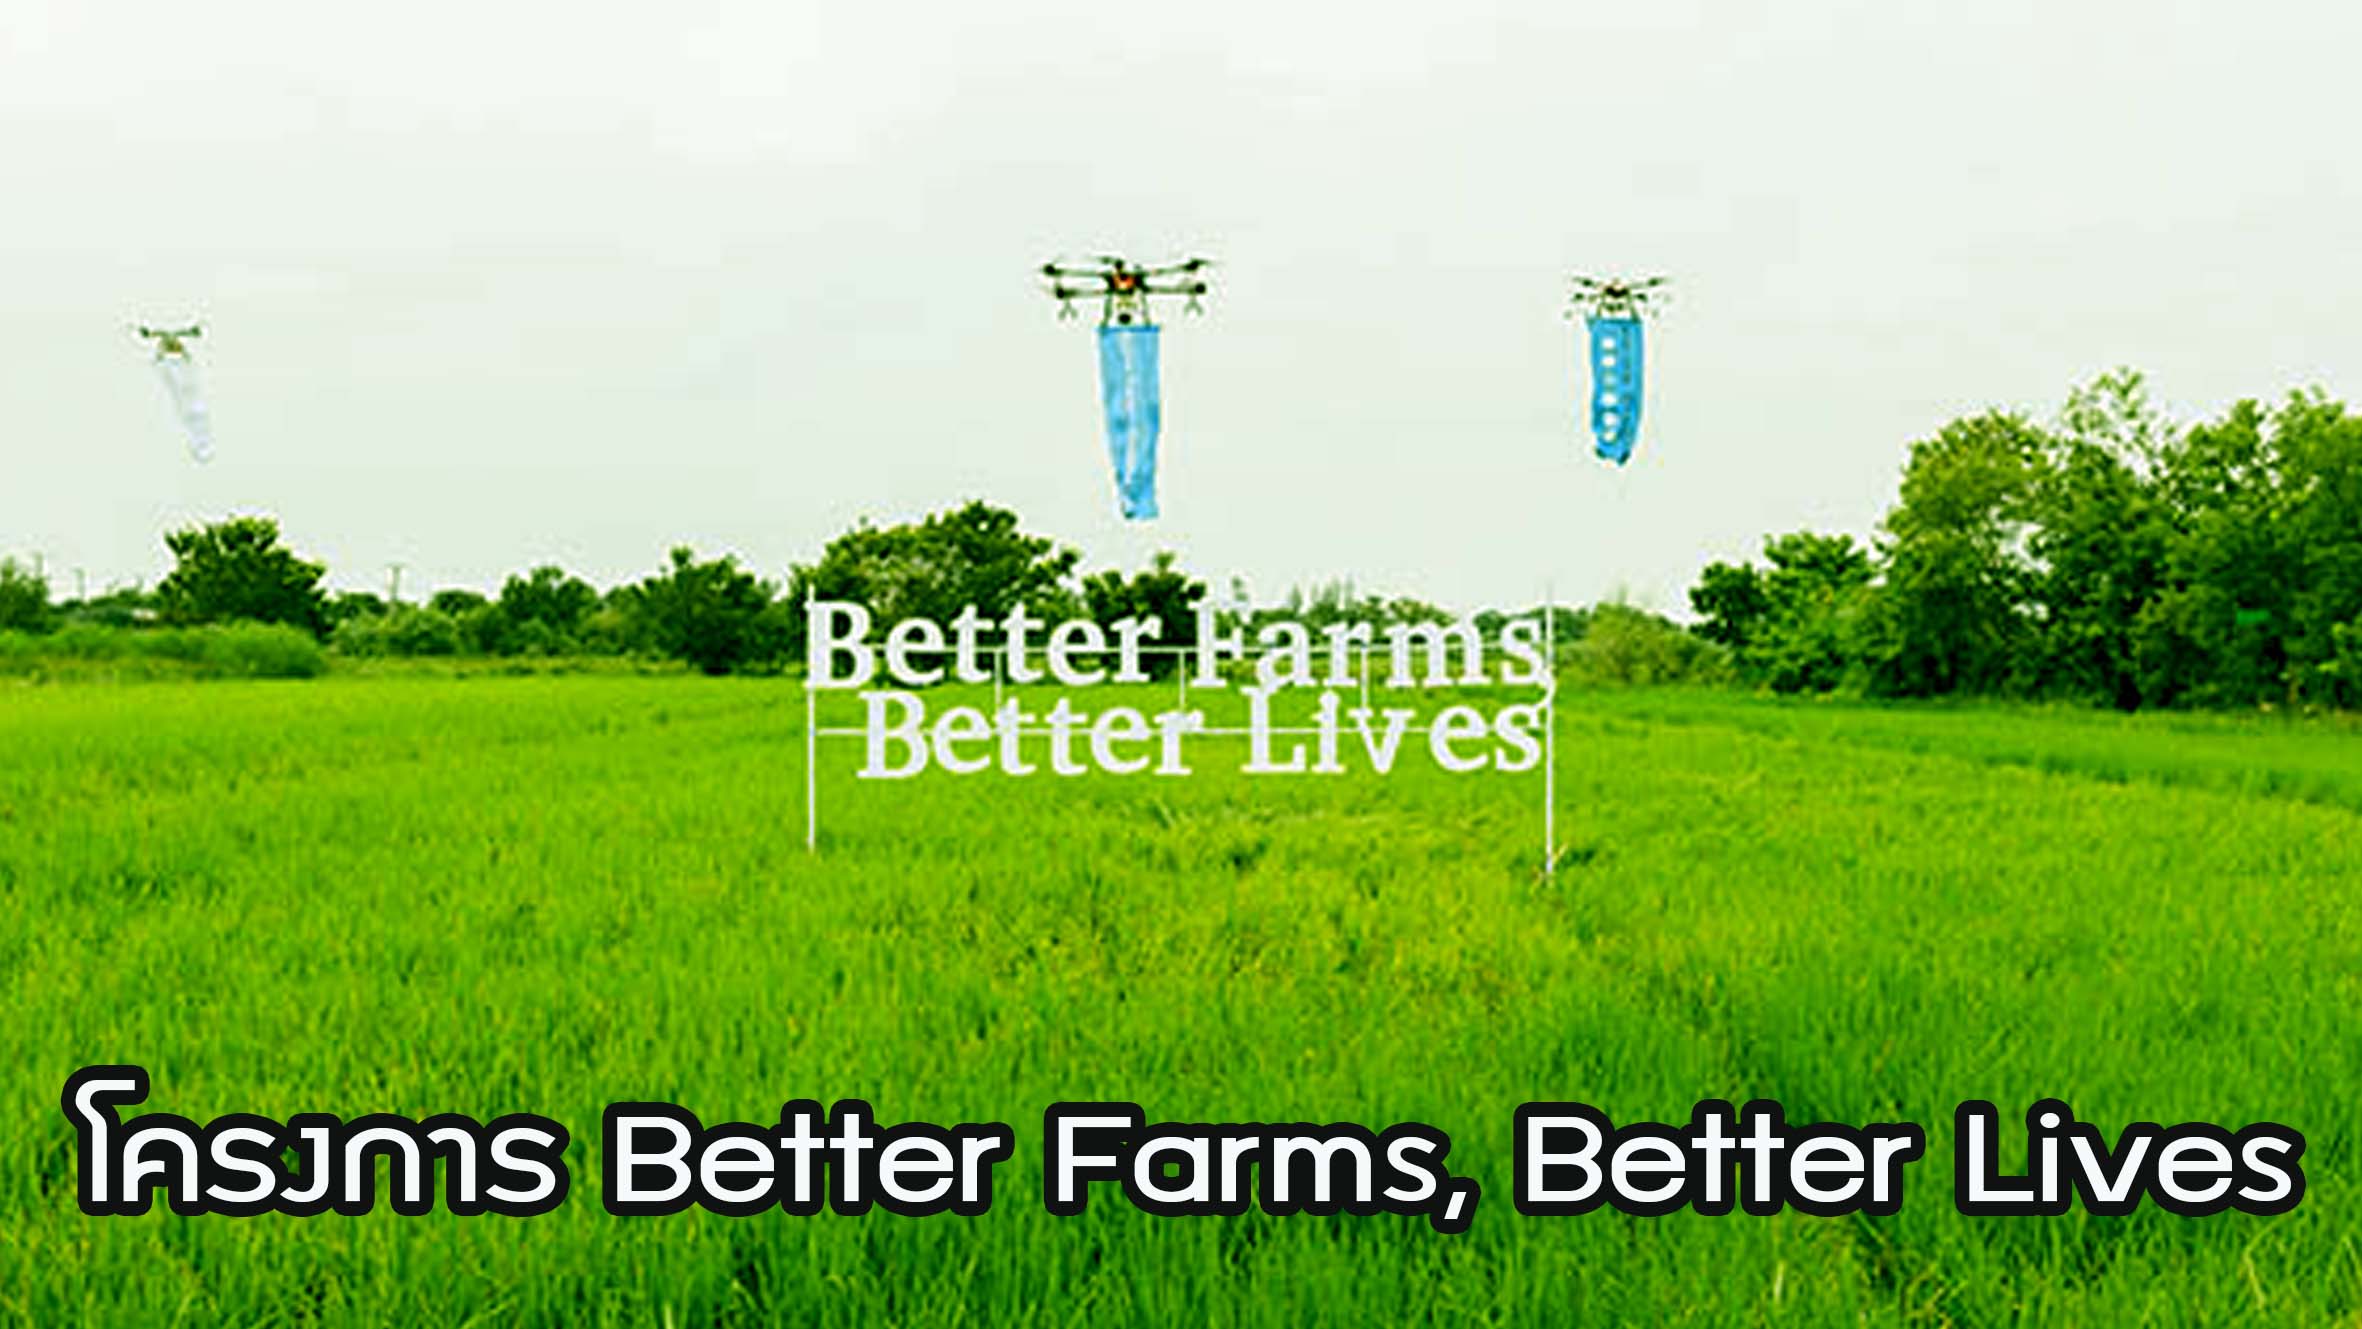 โครงการ Better Farms, Better Lives ช่วยชาวนา สู่ชีวิตวิถีใหม่ด้านการเกษตร ห่วงใยสุขภาพและสิ่งแวดล้อม